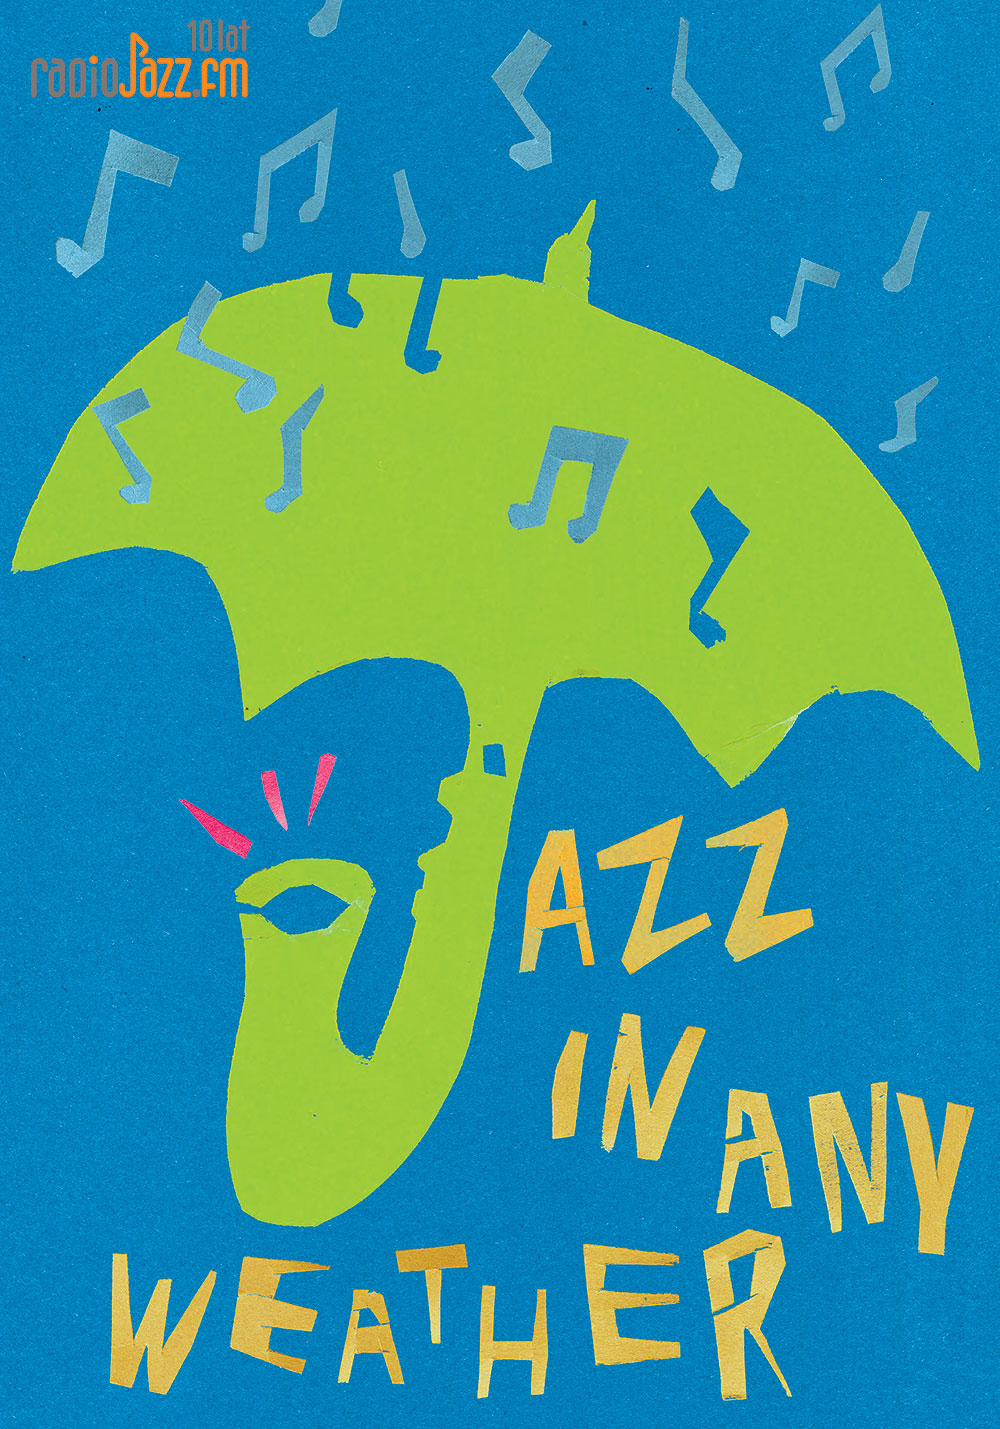 Stanislaw Gajewski Poland jazz in any weather